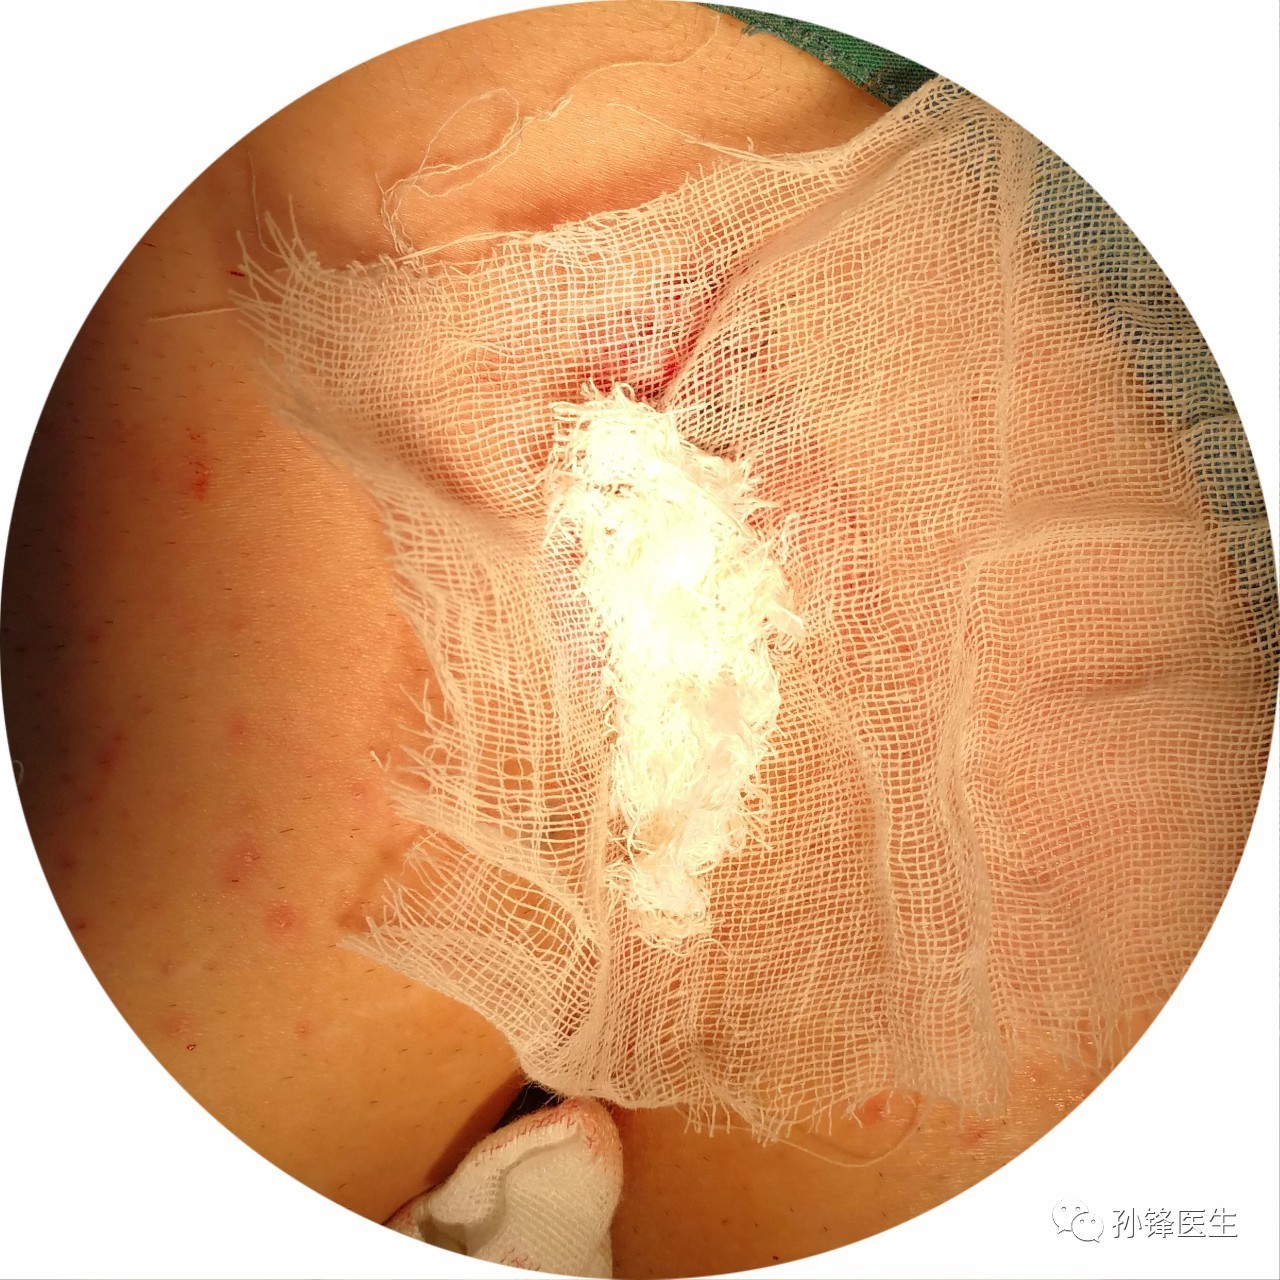 手术笔记|原位皮肤适形移植术(ssg)治疗骶尾部藏毛窦